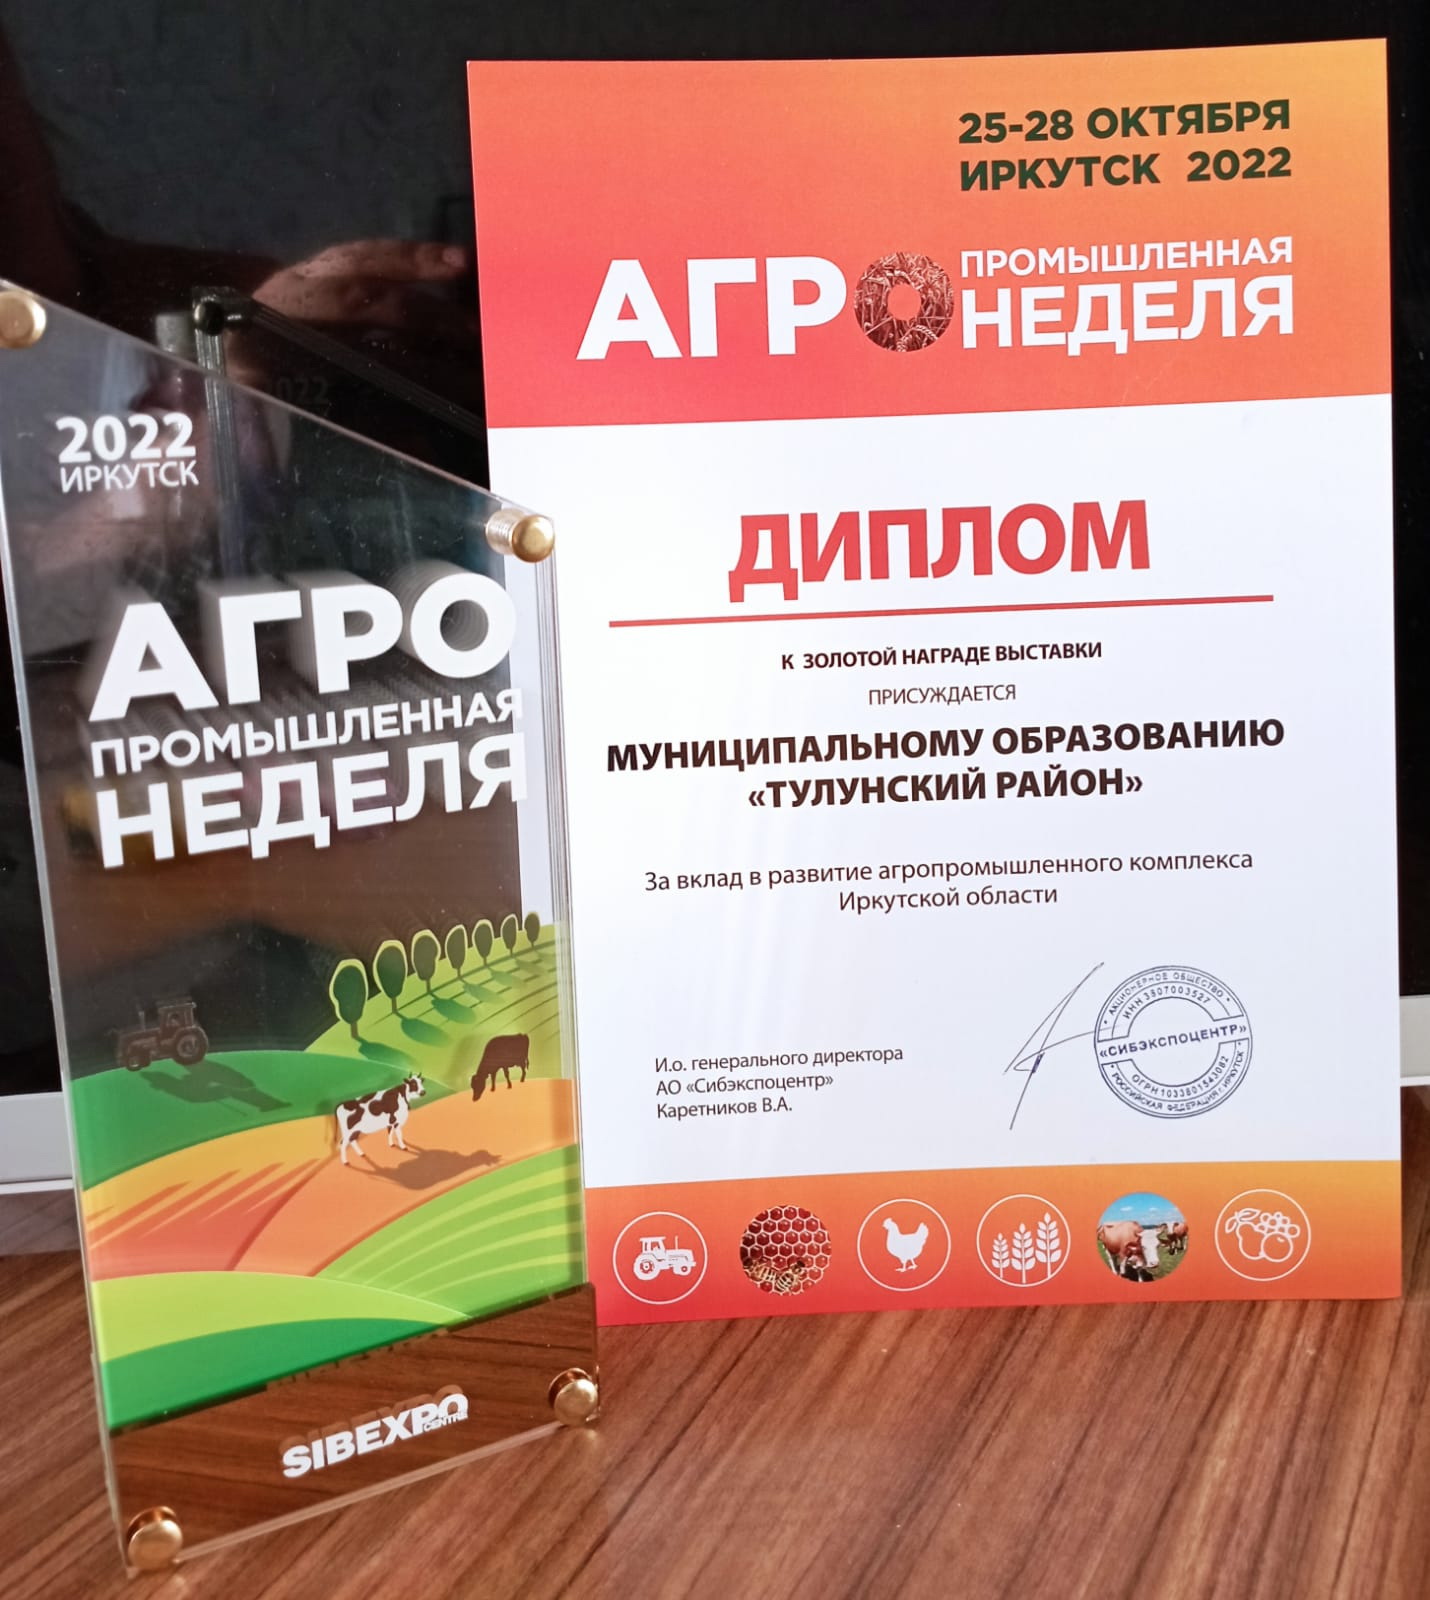 Тулунский район награжден золотой наградой выставки и дипломом за вклад в развитие агропромышленного комплекса Иркутской области